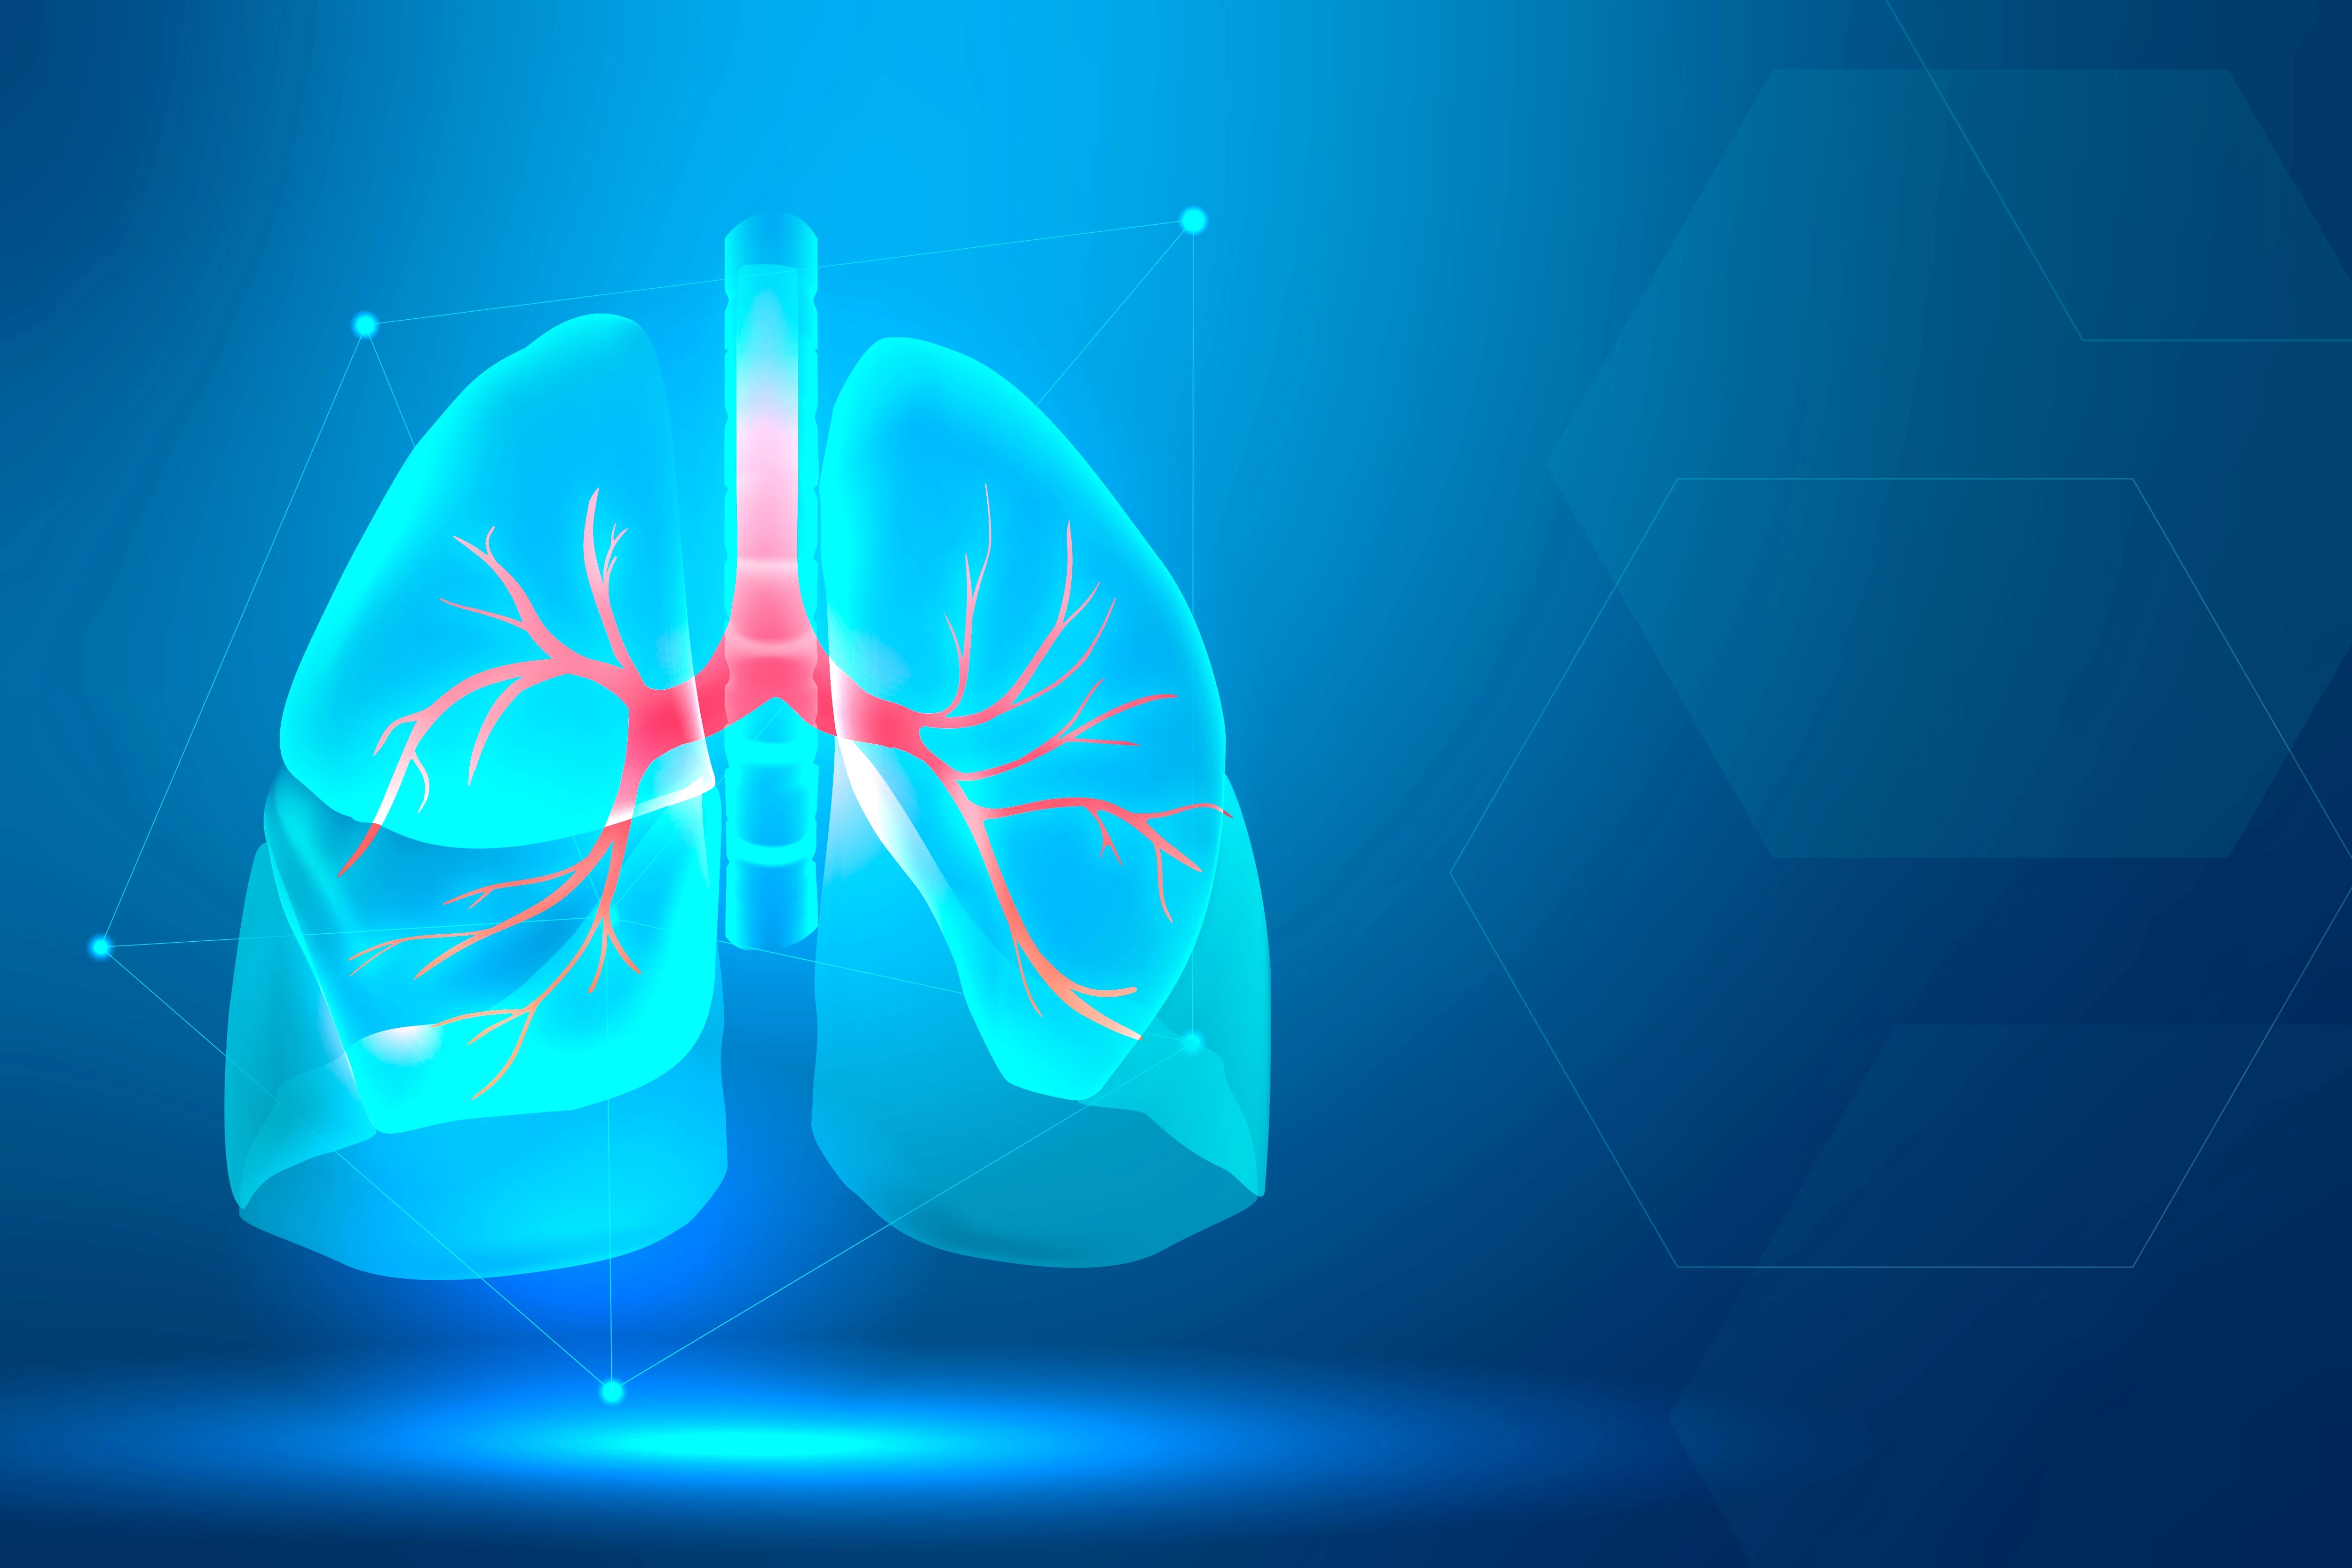 Kronik Obstrüktif Akciğer Hastalığı (KOAH)